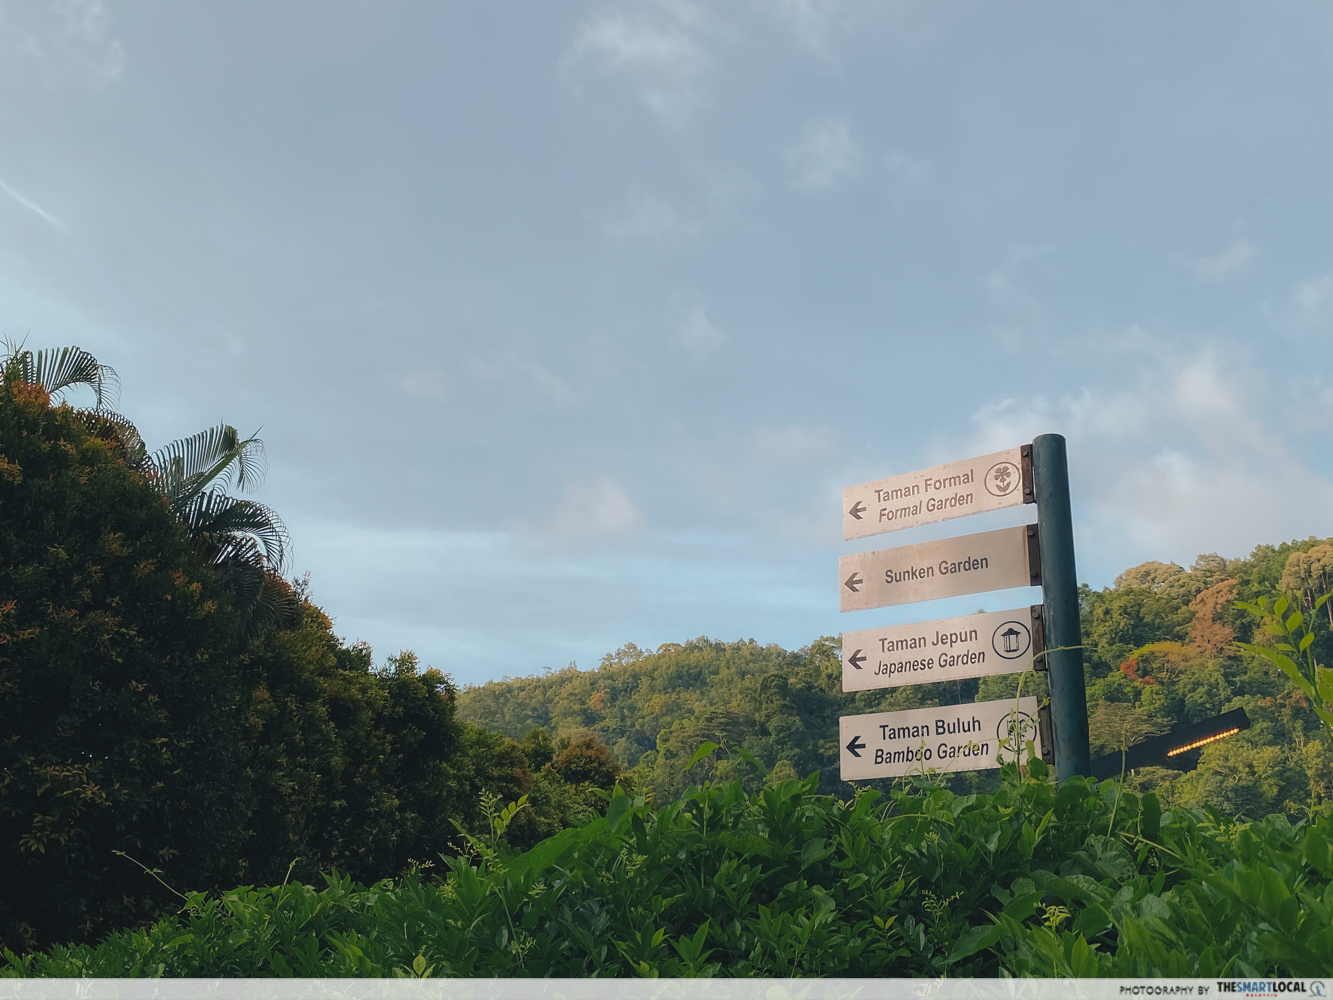 Penang Botanic Gardens - sign